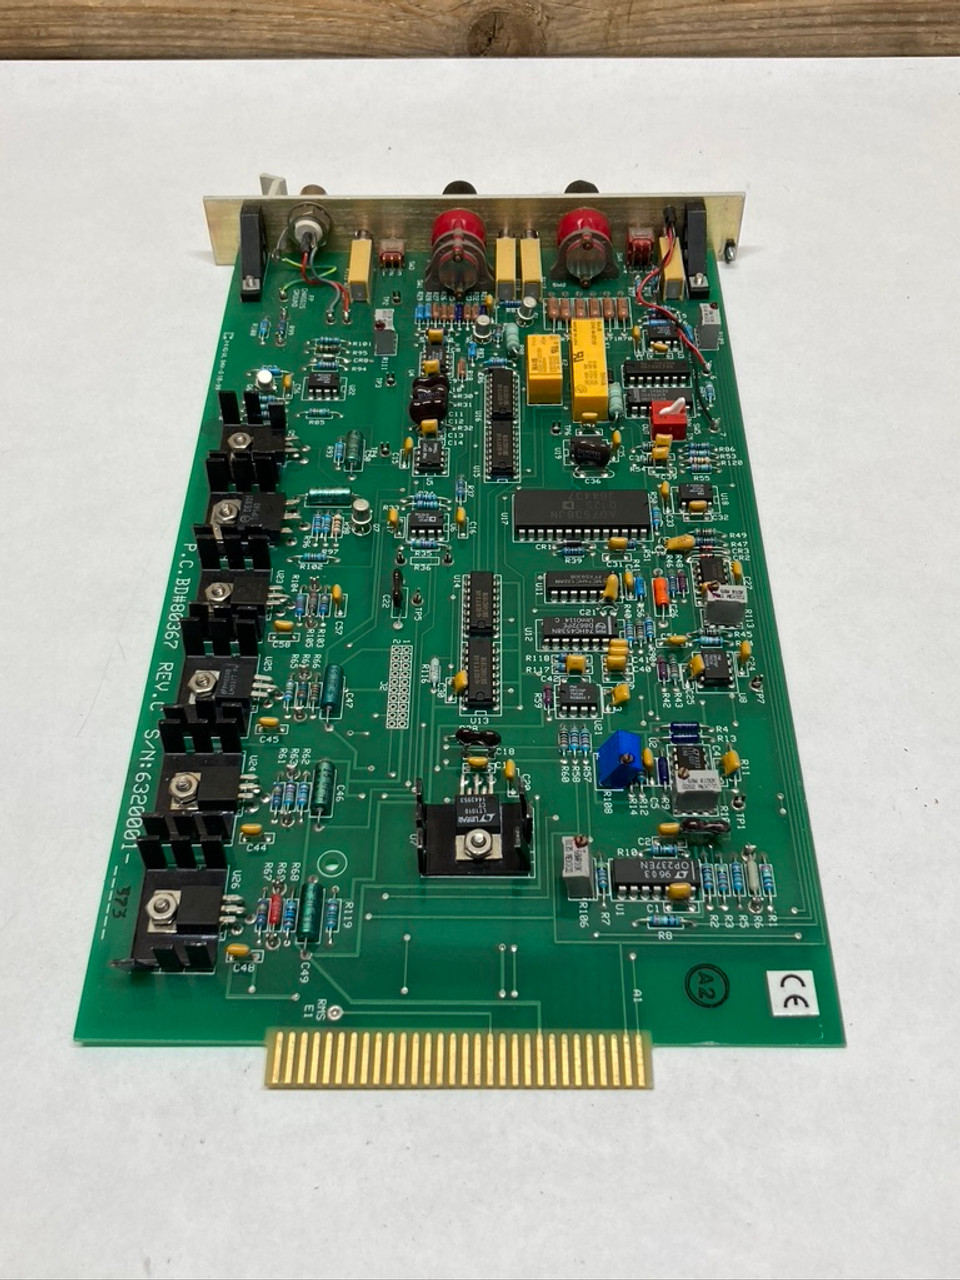 Amplifier Board Model SNAT 632 PAC 61049428D